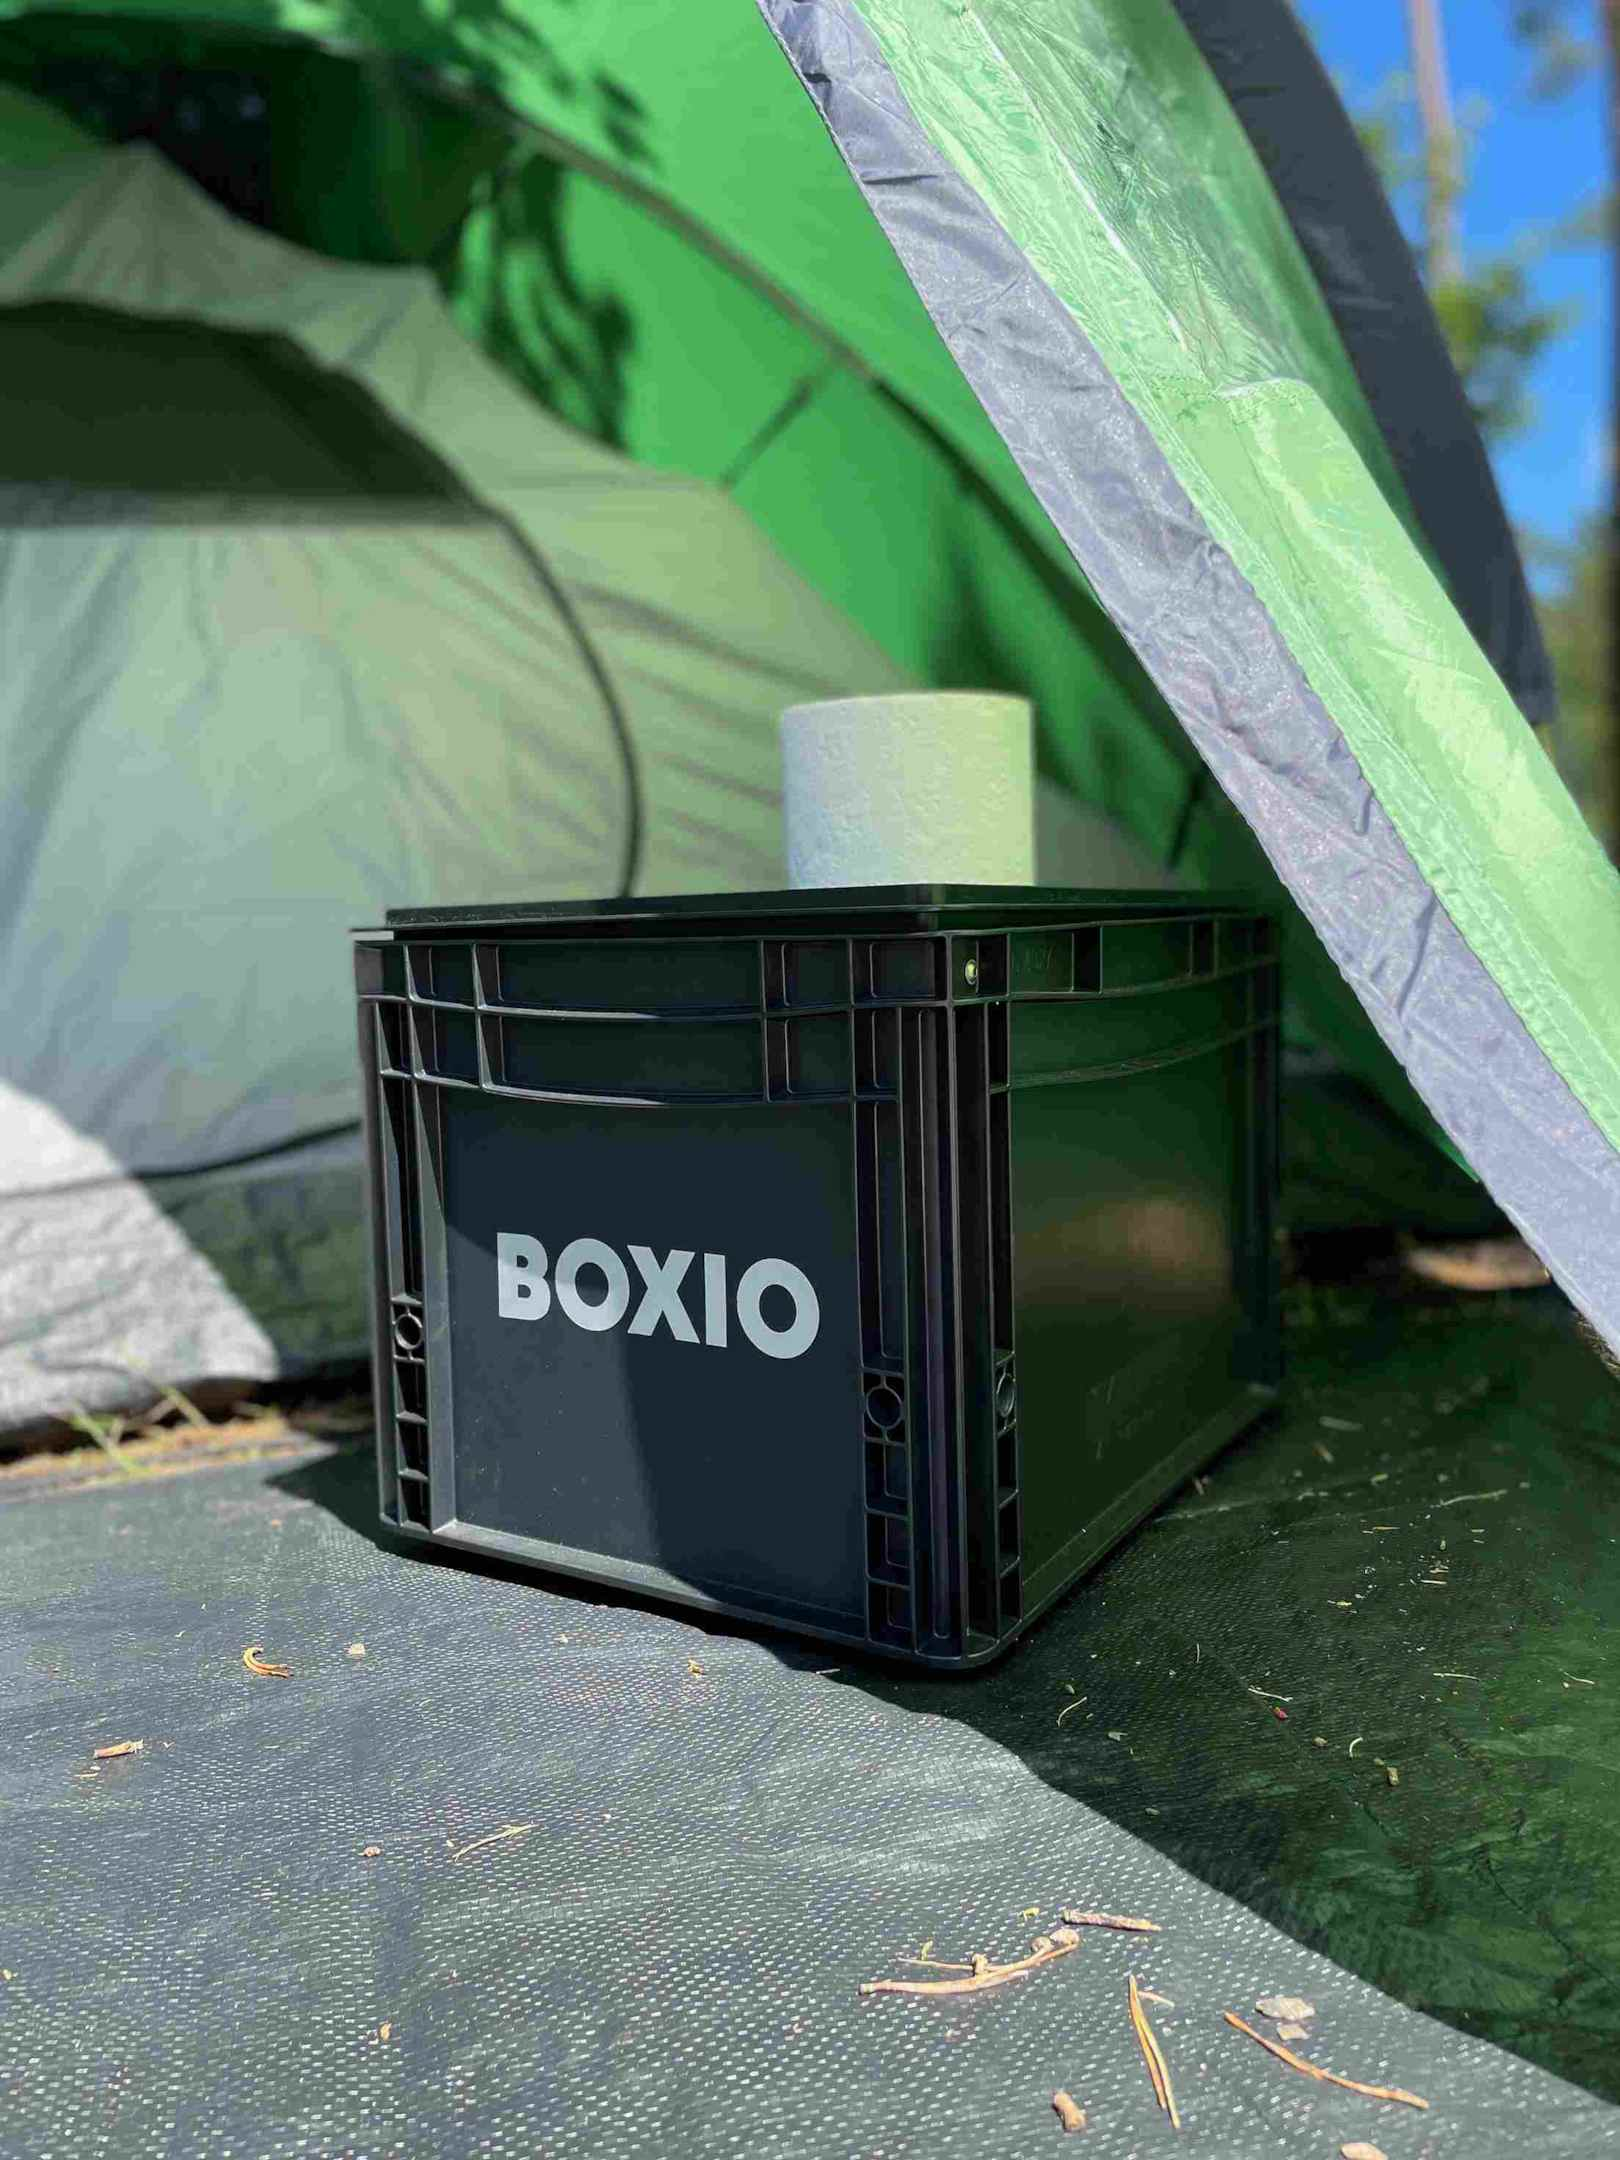 BOXIO-TOILET fica na tenda, um rolo de papel higiénico fica na sanita de separação